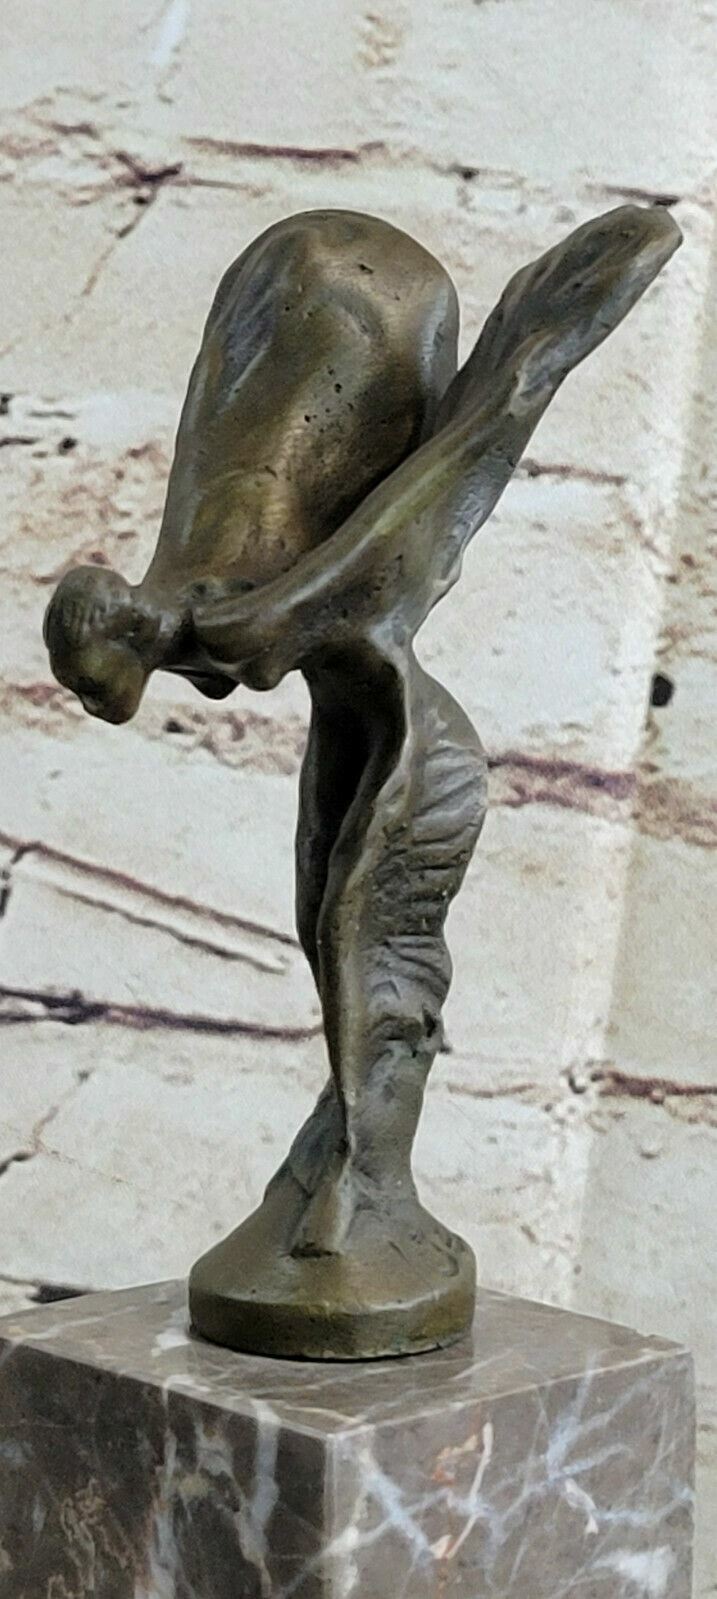 SPIRIT OF ECSTASY ROLLS ROYCE Handcrafted Art Bronze Sculpture Statue Figure NR